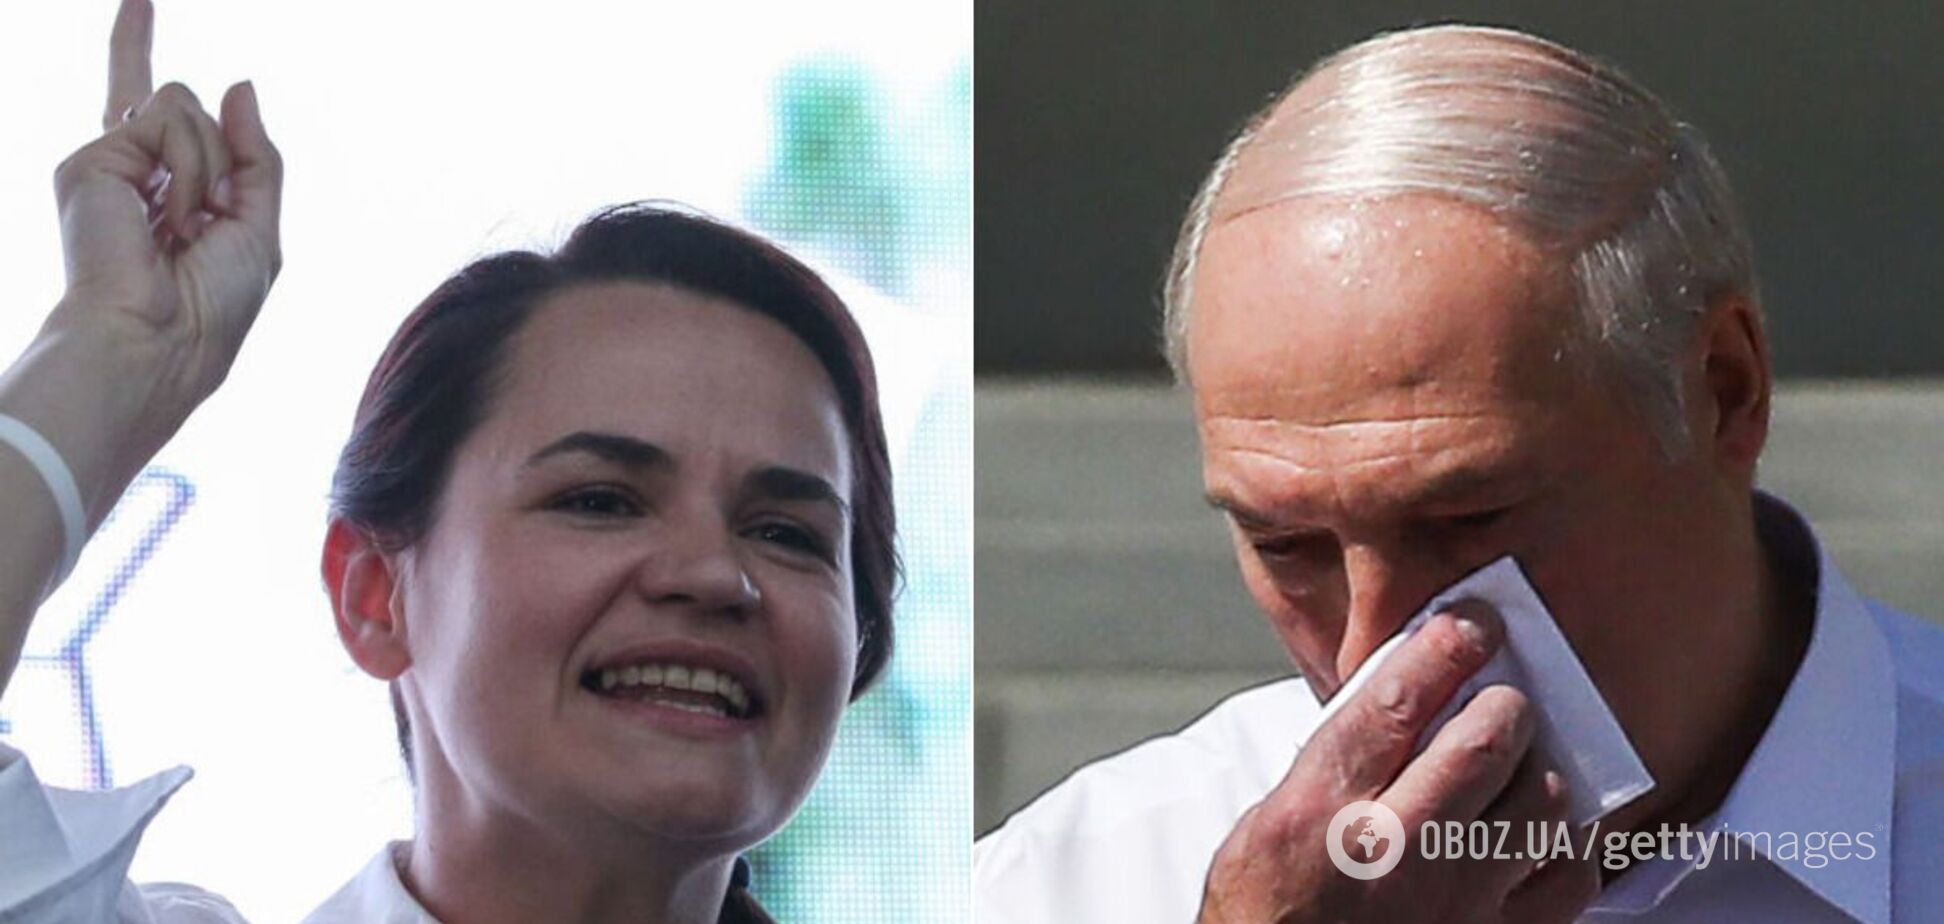 Світлана Тіхановском має намір оголосити себе новим президентом Білорусі замість Олександра Лукашенка